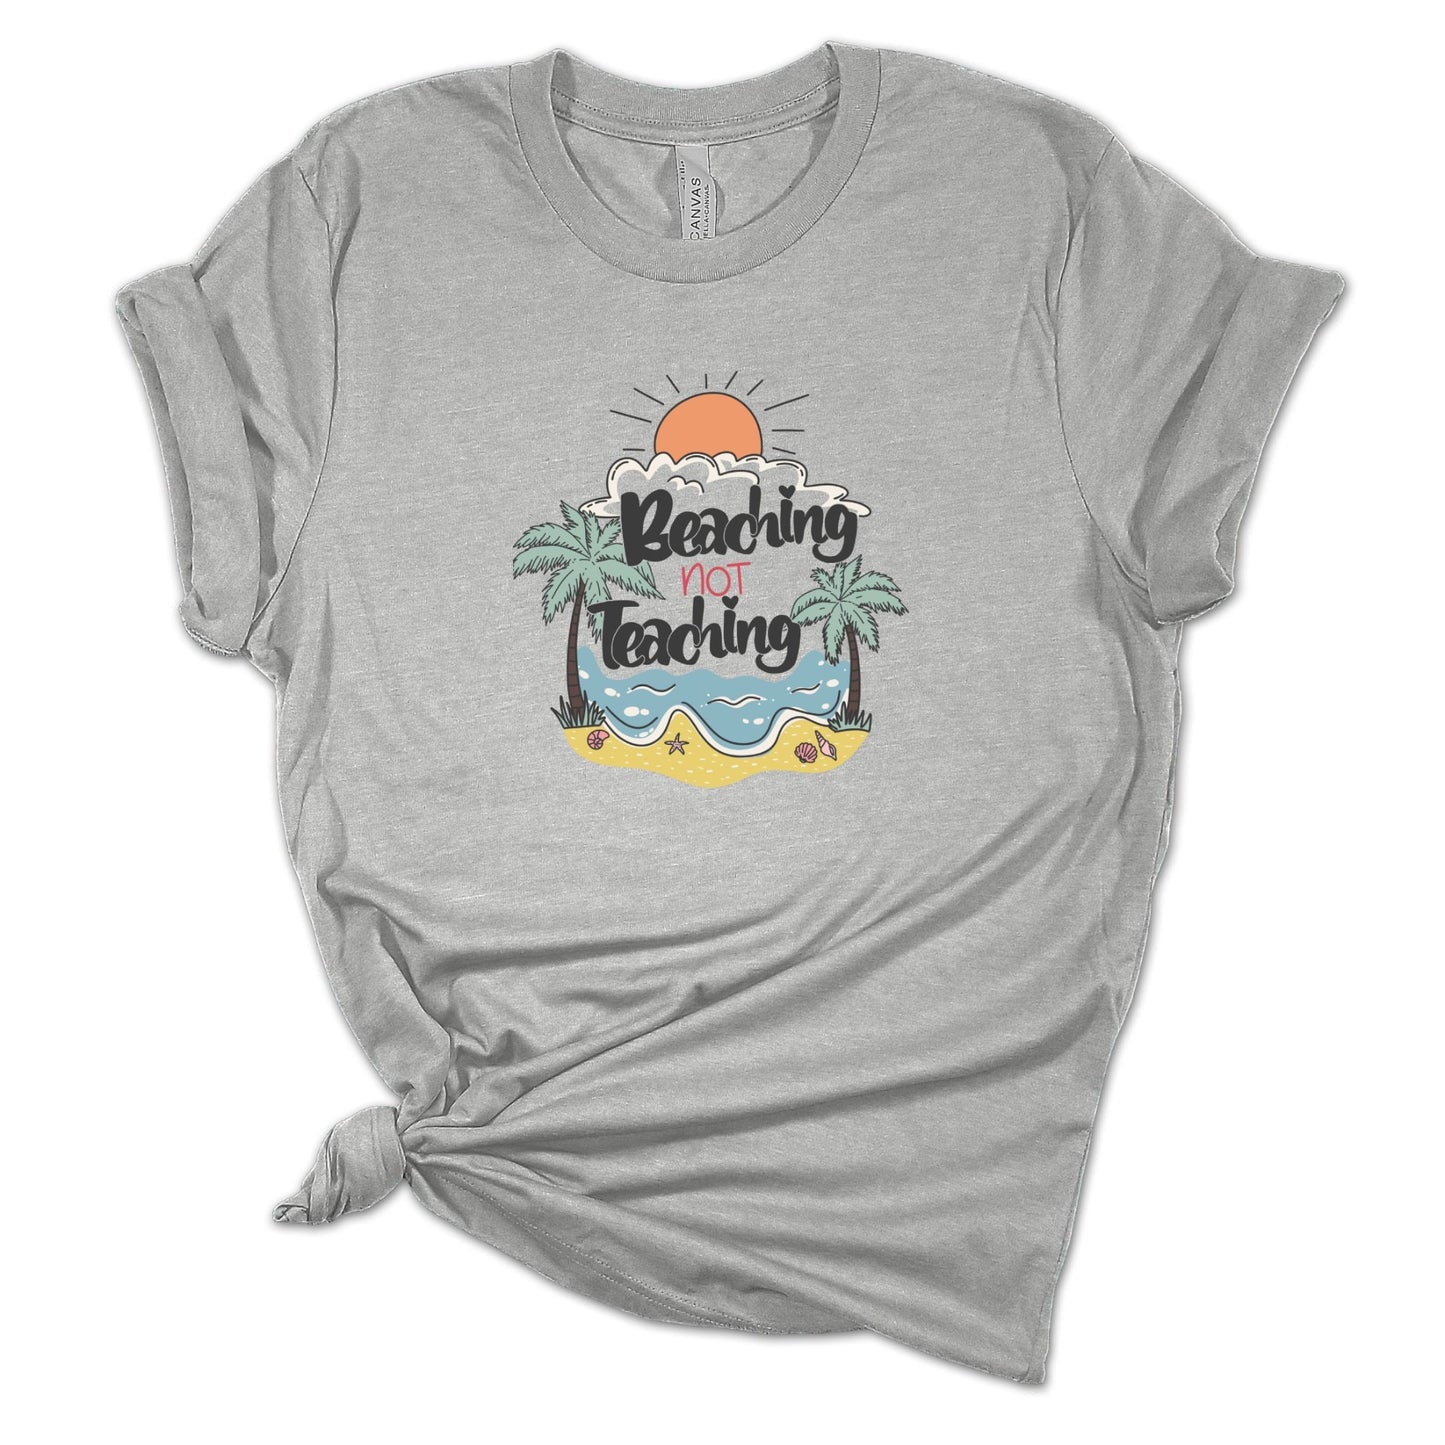 Beaching Not Teaching T-Shirt, Beach Vacation Tee, Teacher Gift, Funny Teacher Shirt, Teacher Appreciation Gift, Elementary School